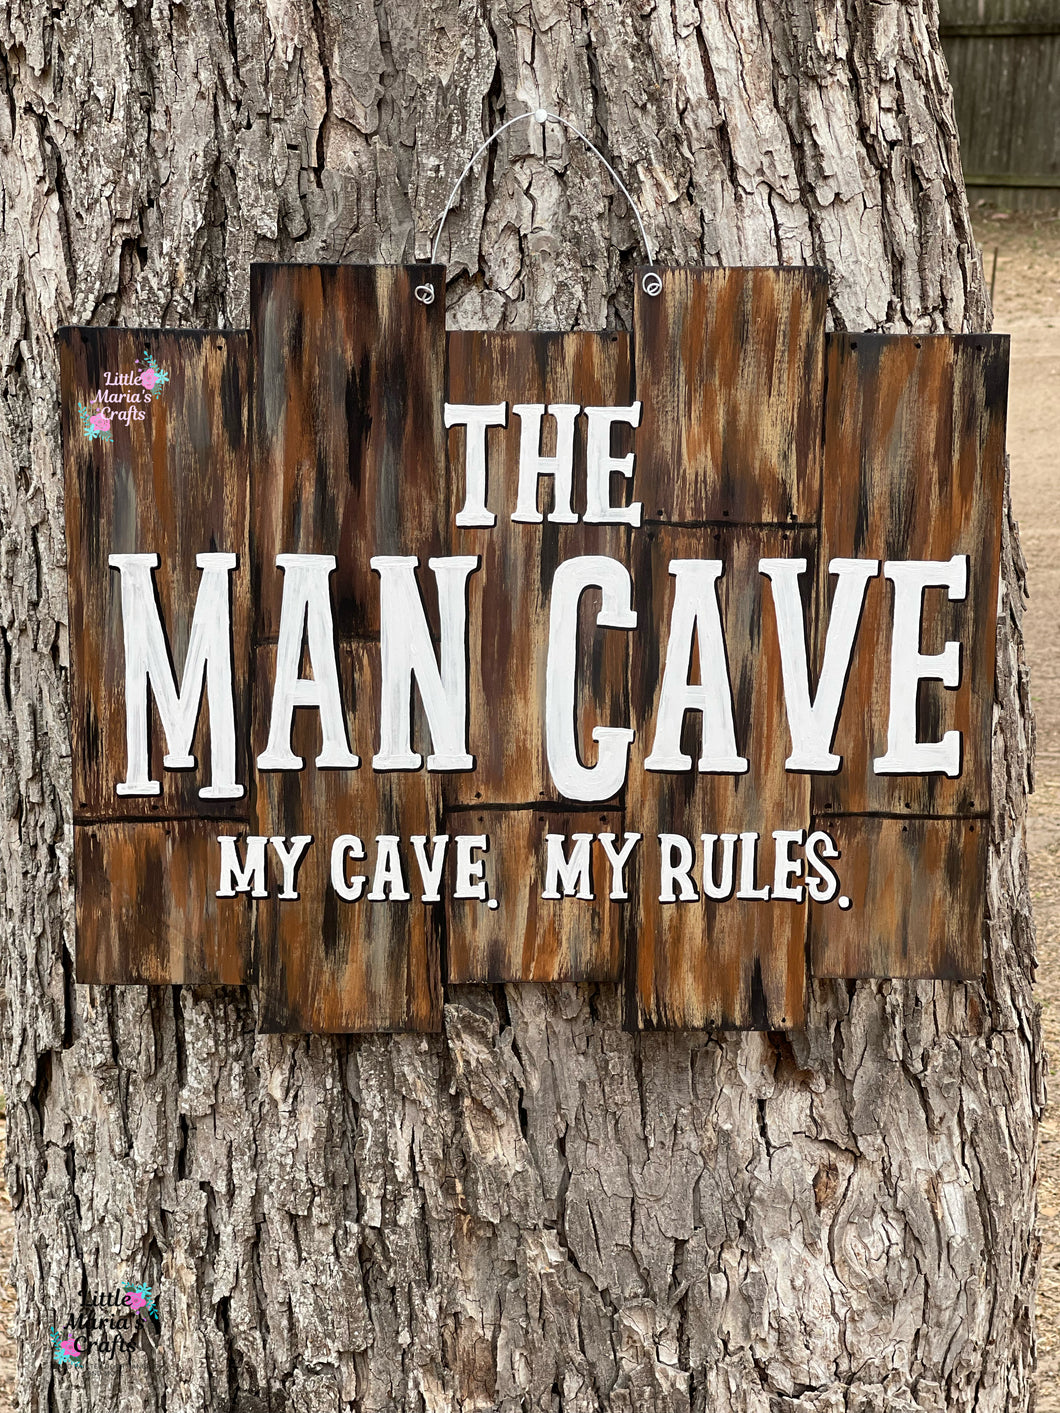 Man Cave Door Hanger